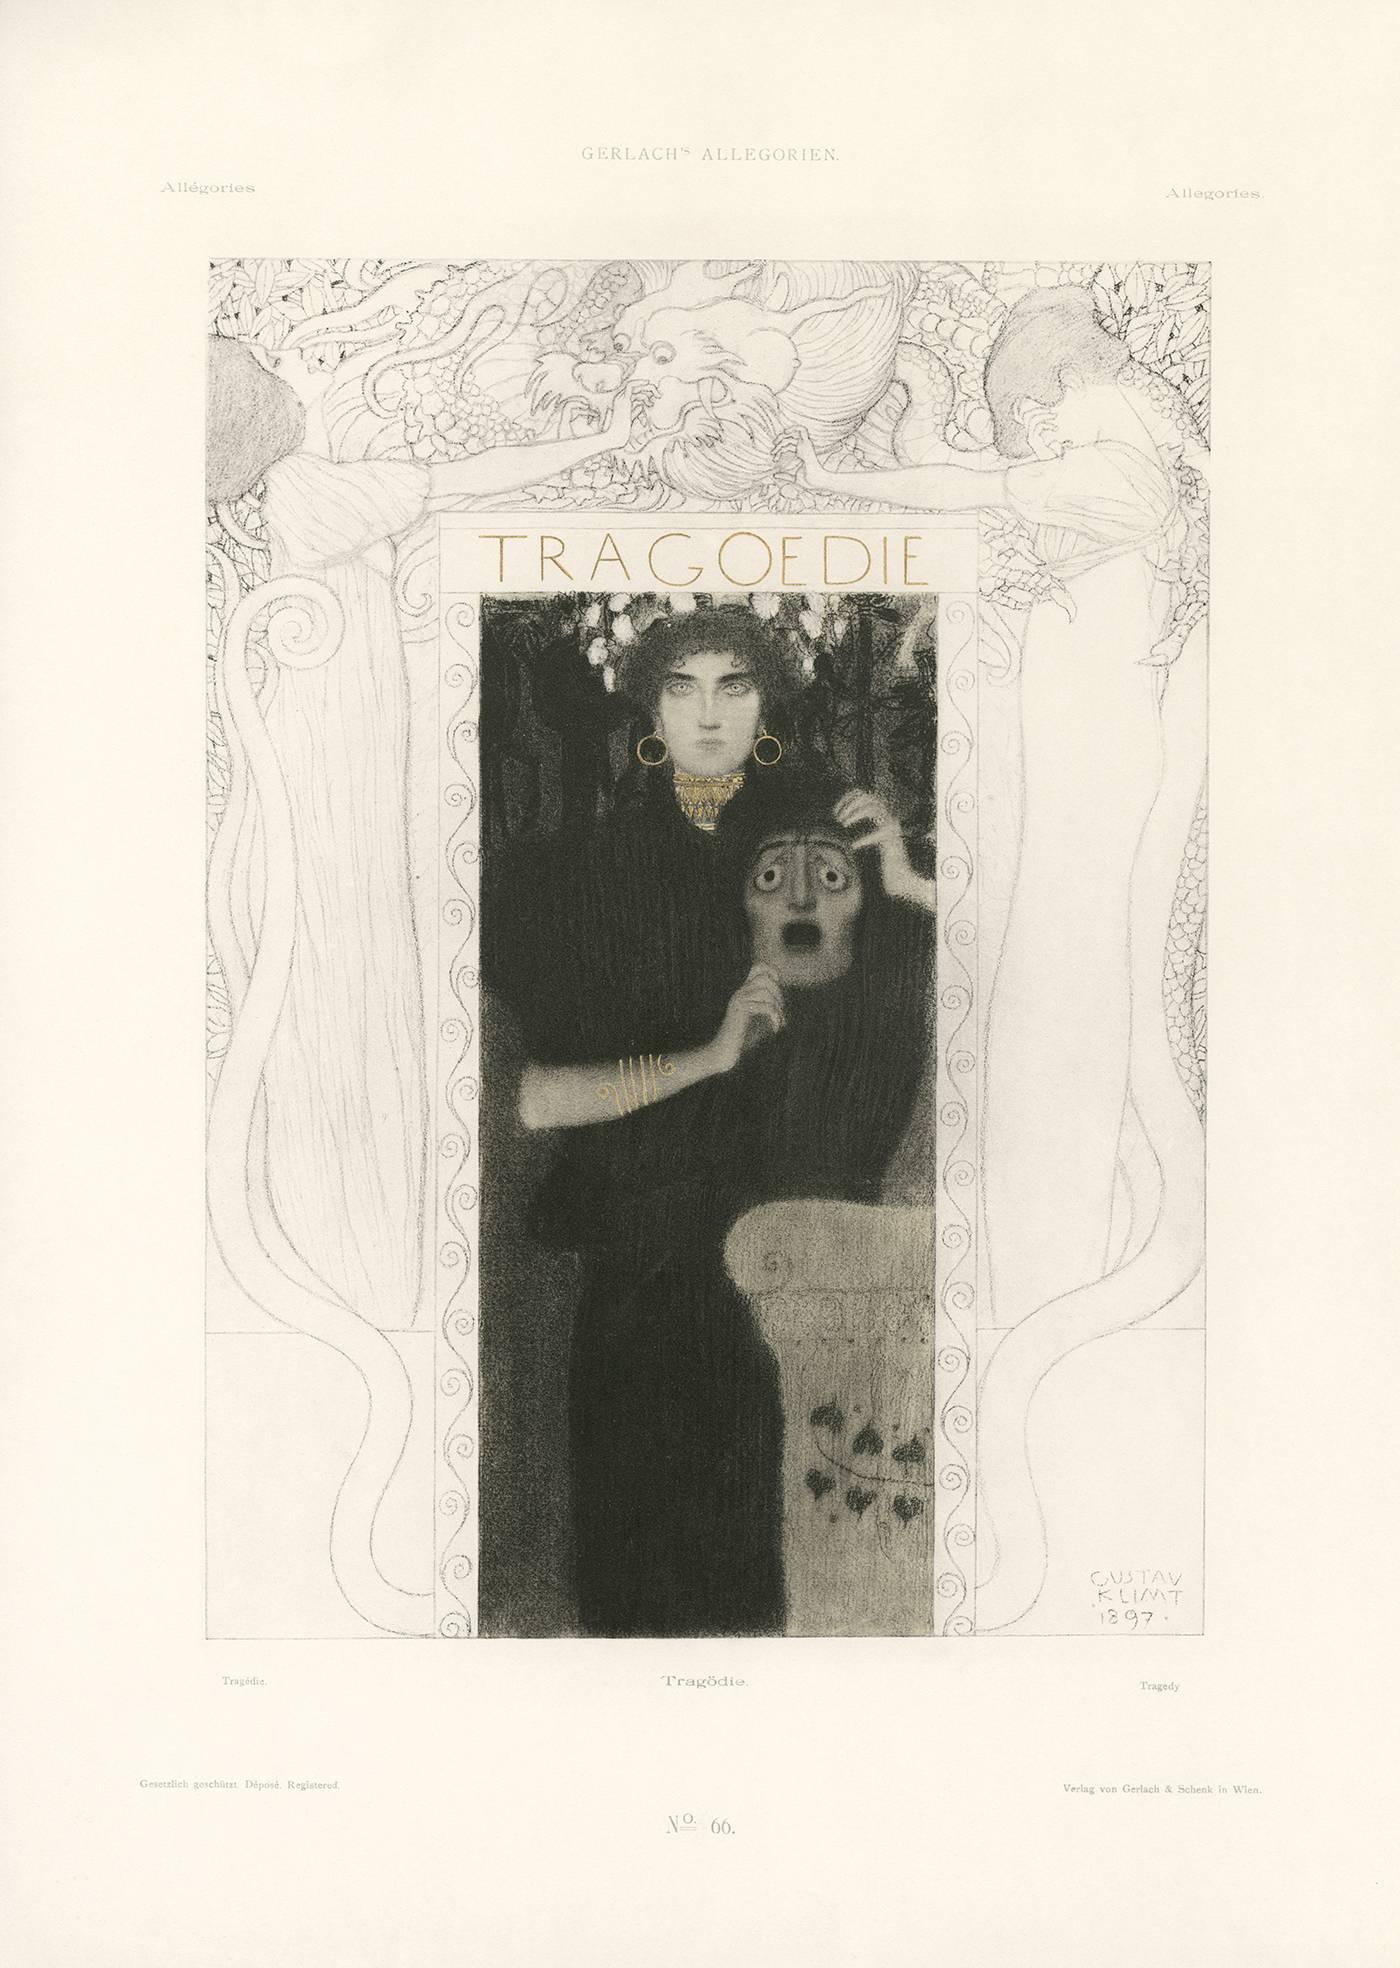 Gerlach's Allegorien, plate #66: "Tragedy" Lithograph, Gustav Klimt.